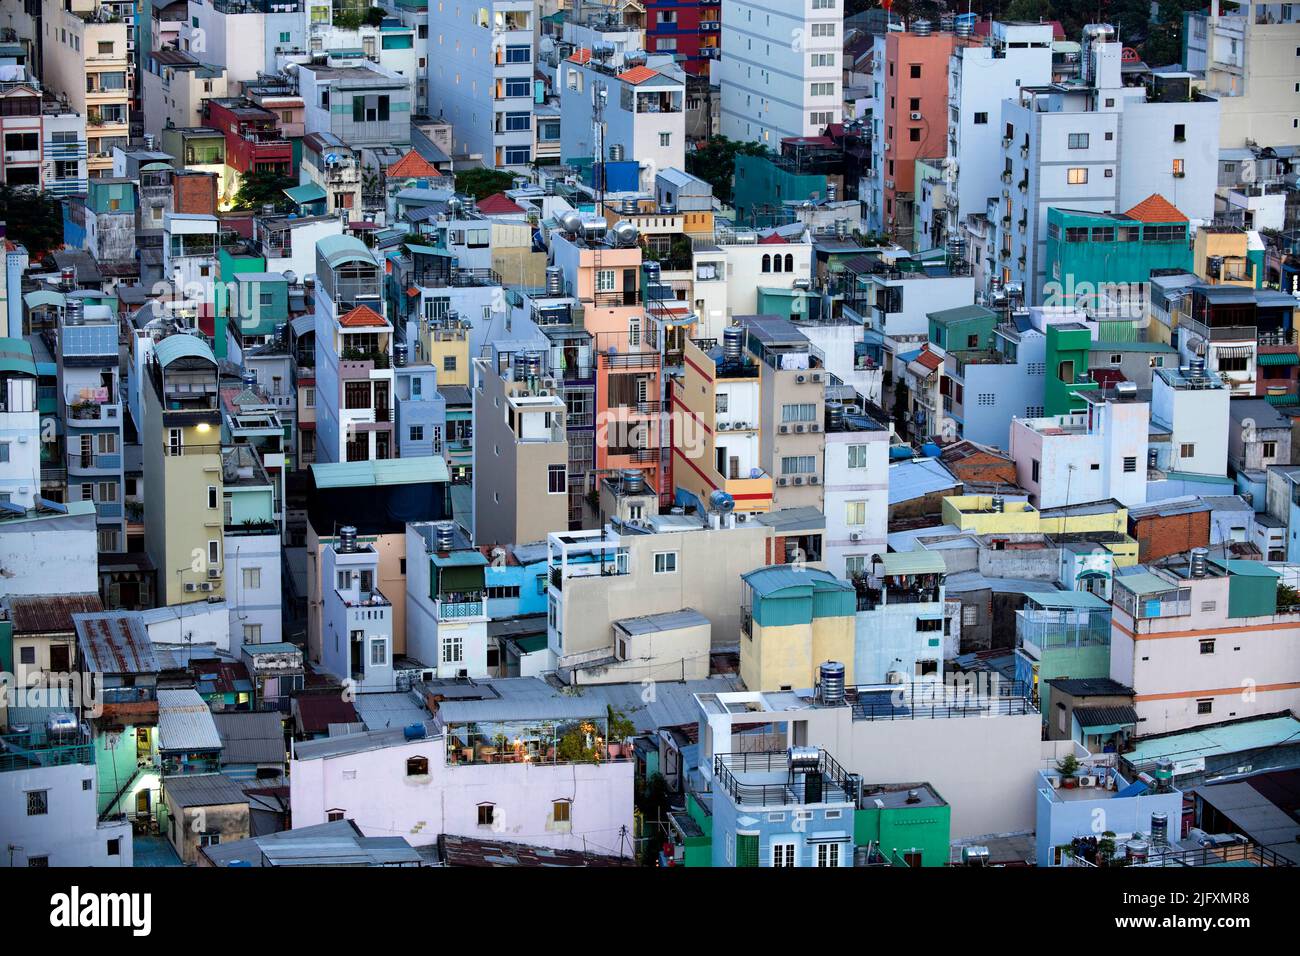 Überfüllte städtische Dichte in Ho Chi Minh City (früher Saigon genannt), Vietnam. Stockfoto